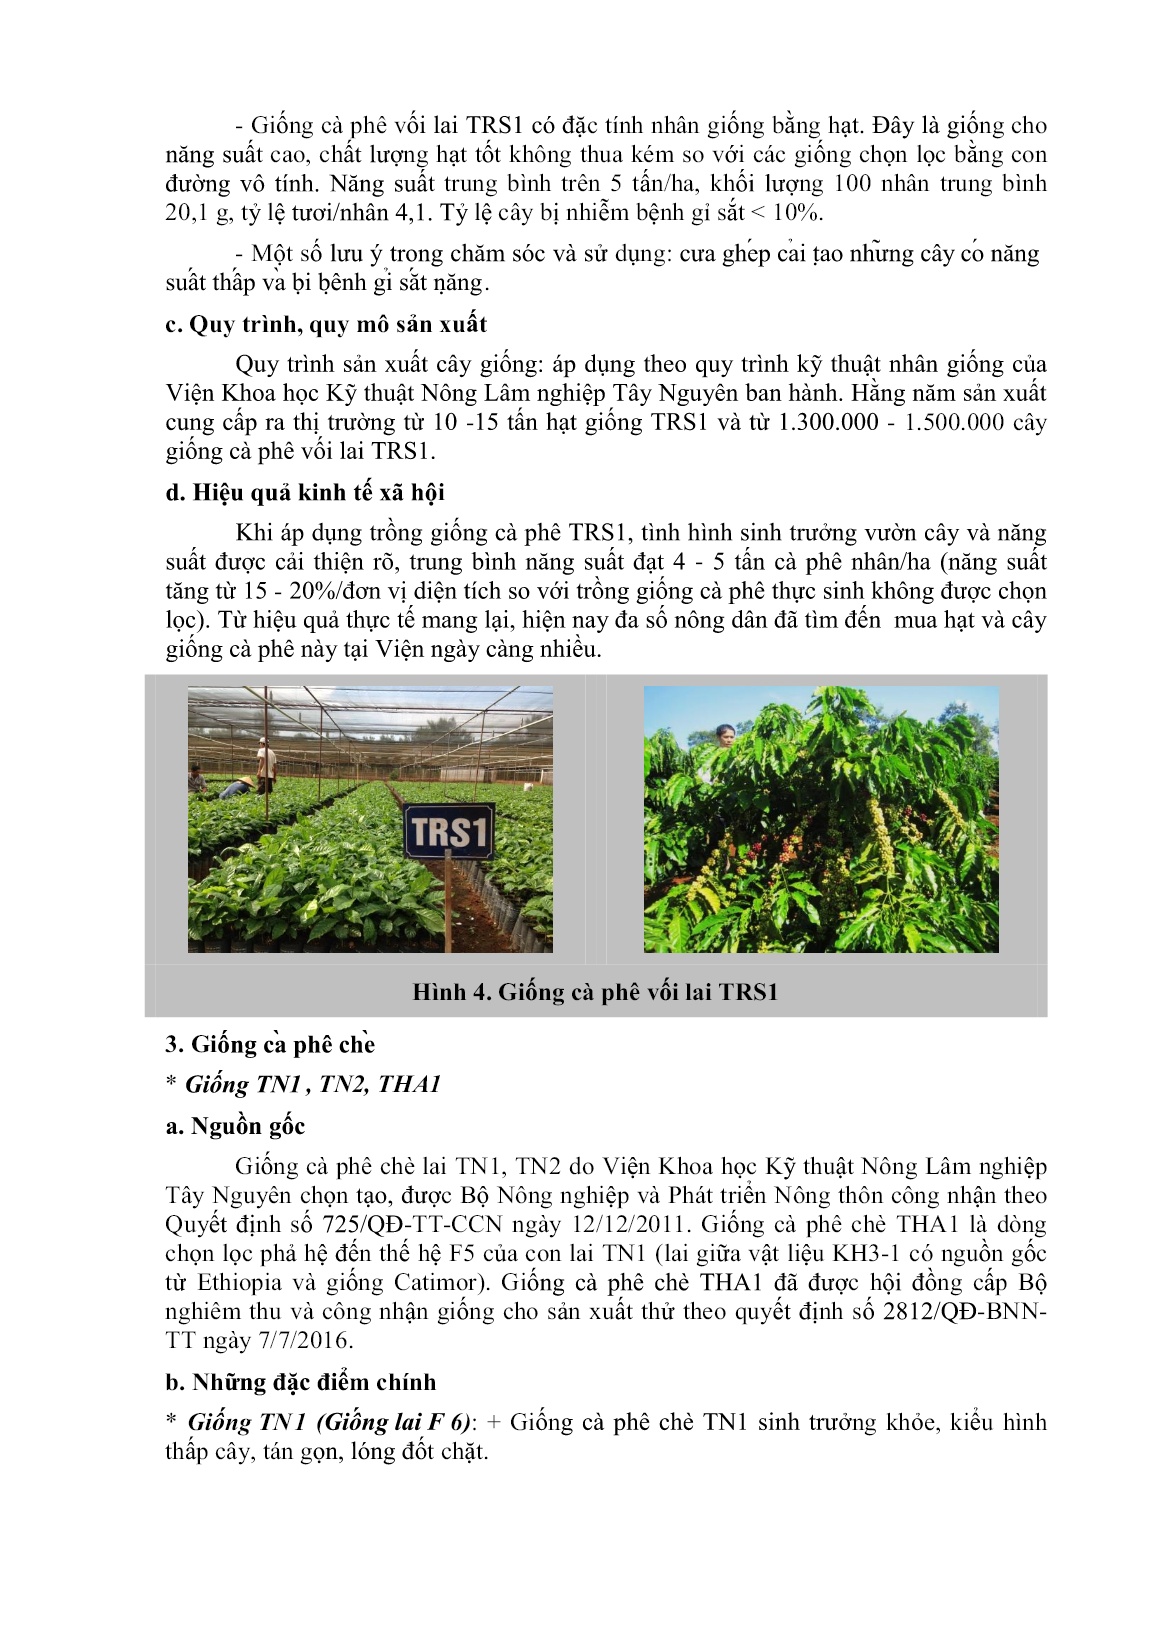 Giới thiệu một số giống cây trồng và các sản phẩm nông nghiệp phục vụ cho vùng Tây Nguyên trang 4